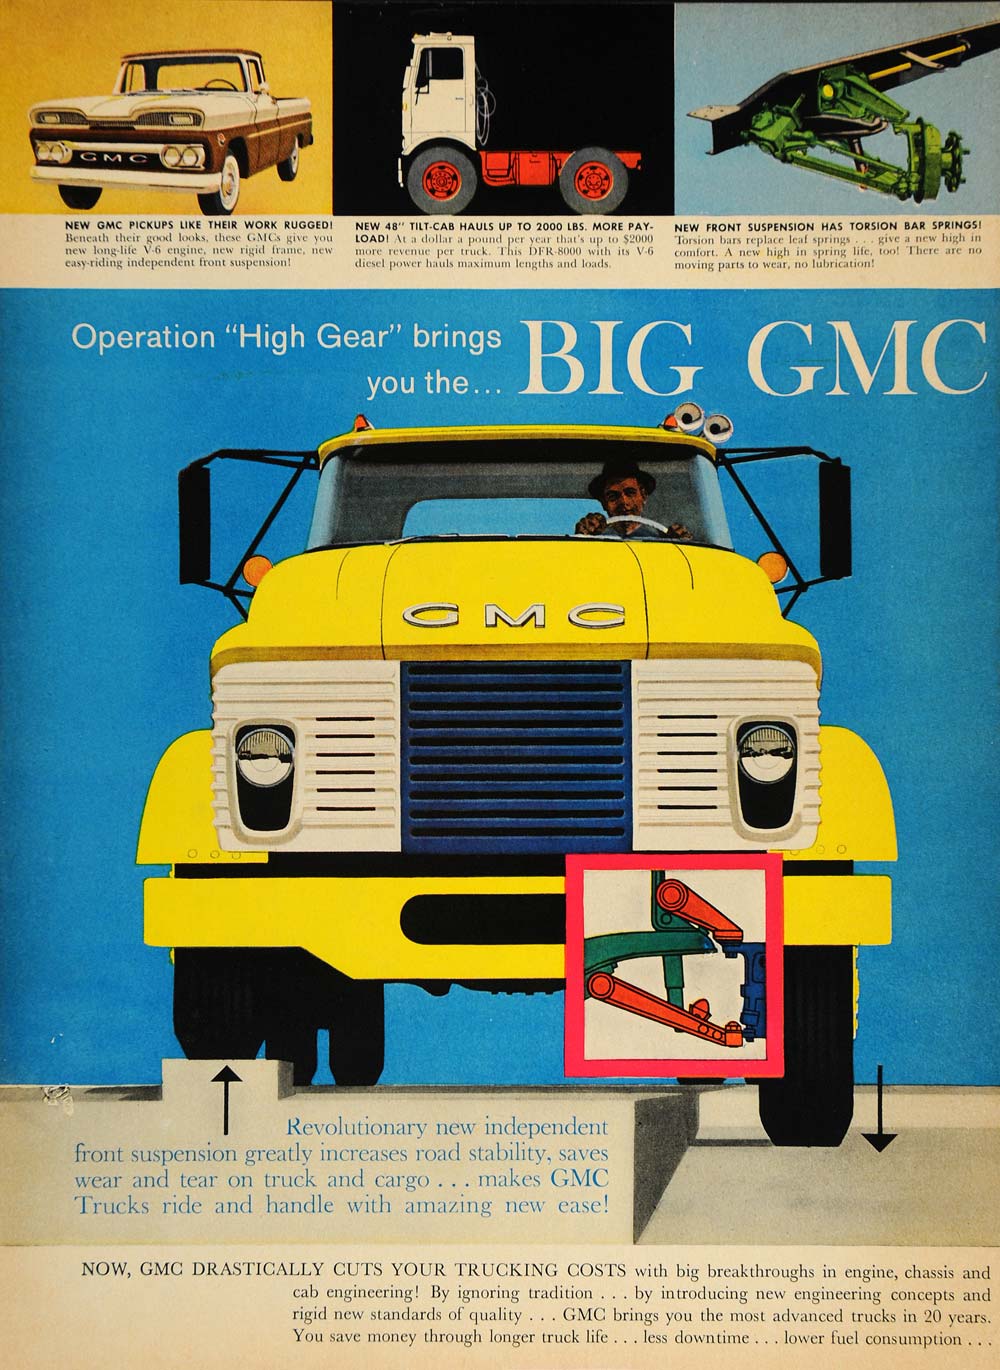 1960 Ad General Motors Truck Pickup Tilt Cab Suspension - ORIGINAL MIX8